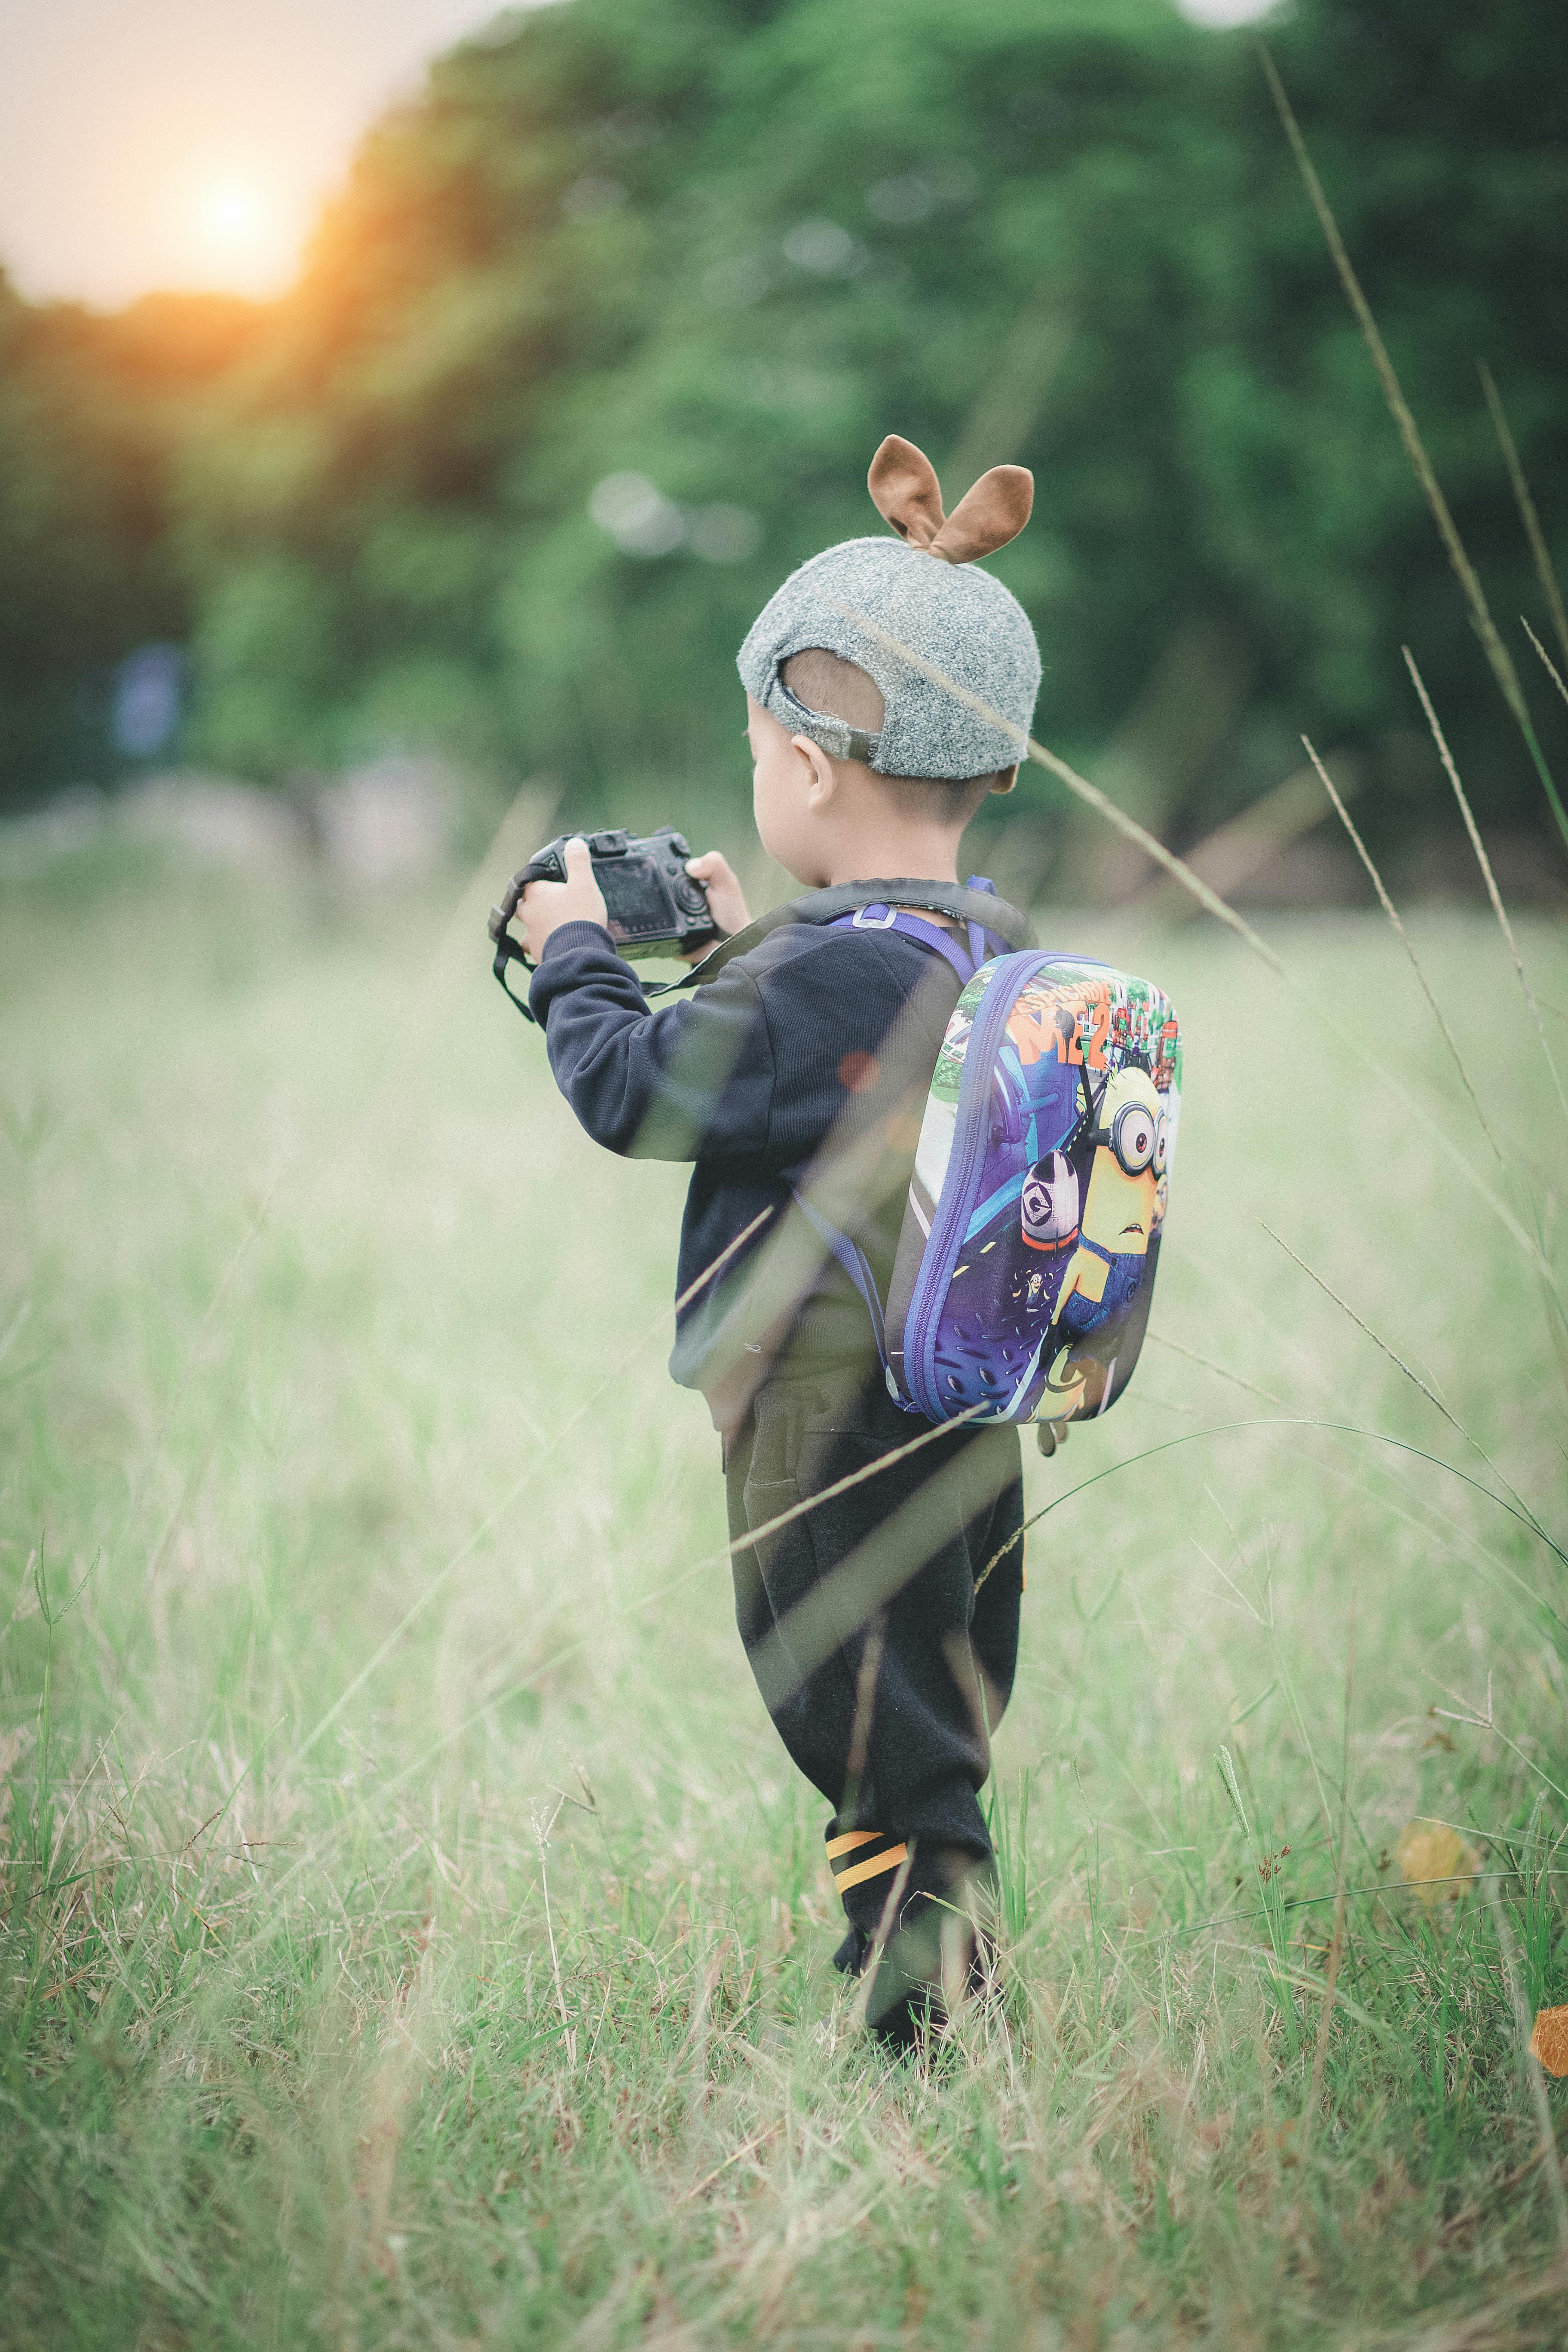 Bạn có muốn chiêm ngưỡng hình ảnh của một cậu bé đứng trên cỏ xanh, với balo và máy ảnh trong tay? Tất cả những gì bạn cần là đến với chúng tôi để khám phá tất cả những tác phẩm đẹp nhẹ nhàng này.